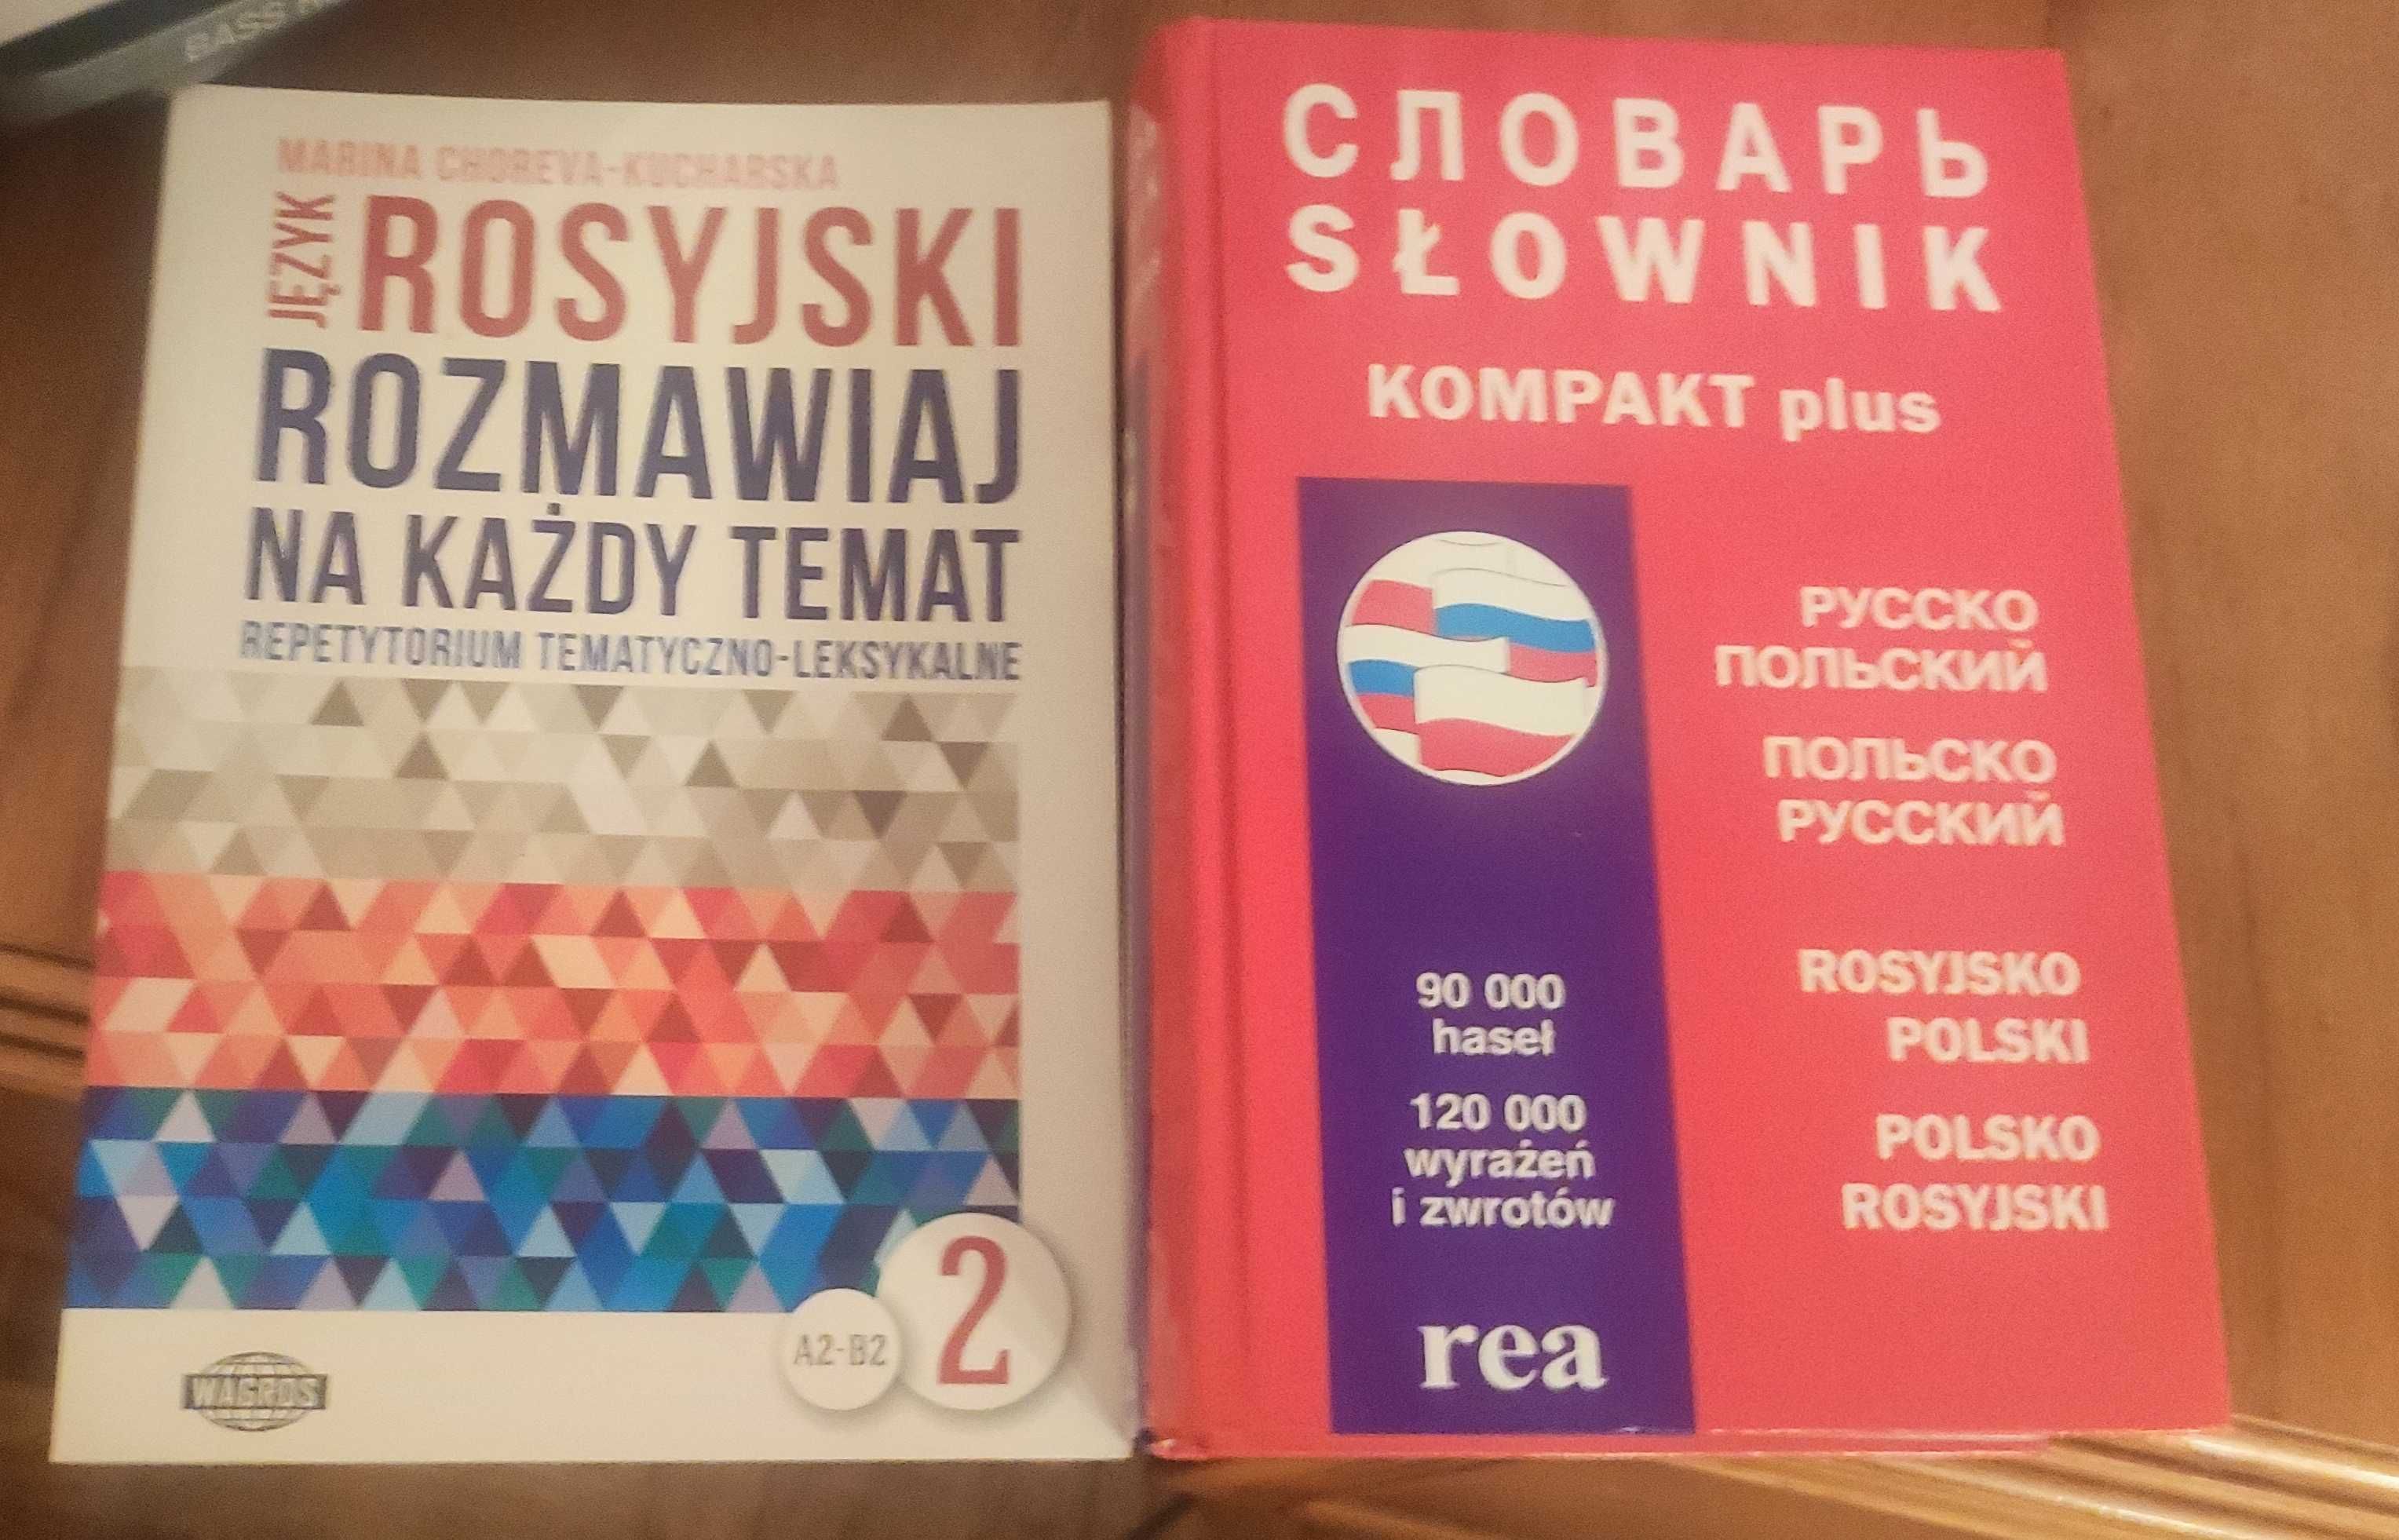 Słownik kompakt plus polsko rosyjski i rosyjsko polski,